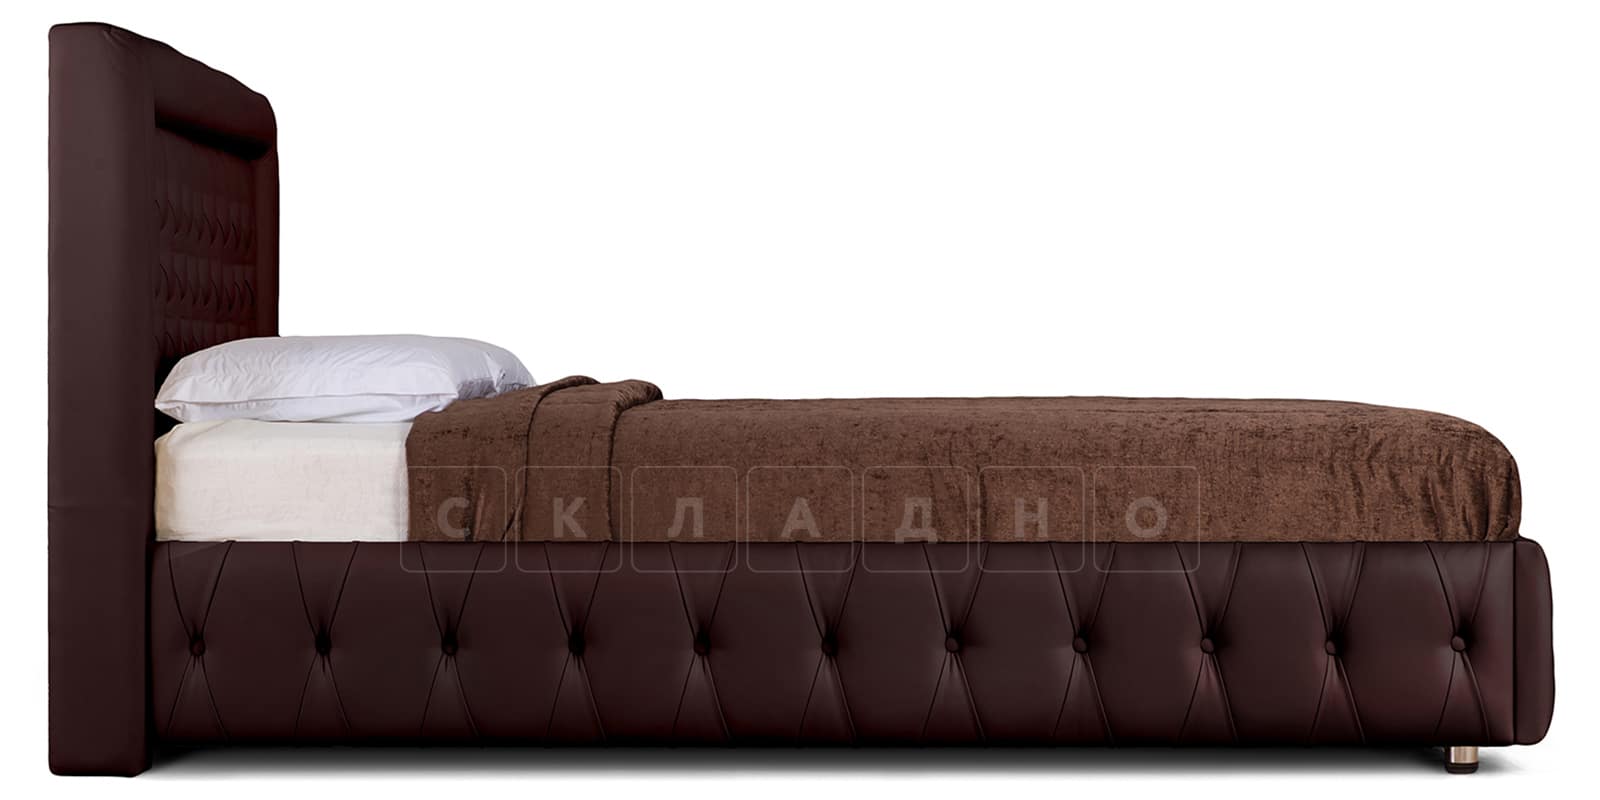 Мягкая кровать Малибу 160 см экокожа шоколадного цвета вариант 7-2 фото 3 | интернет-магазин Складно